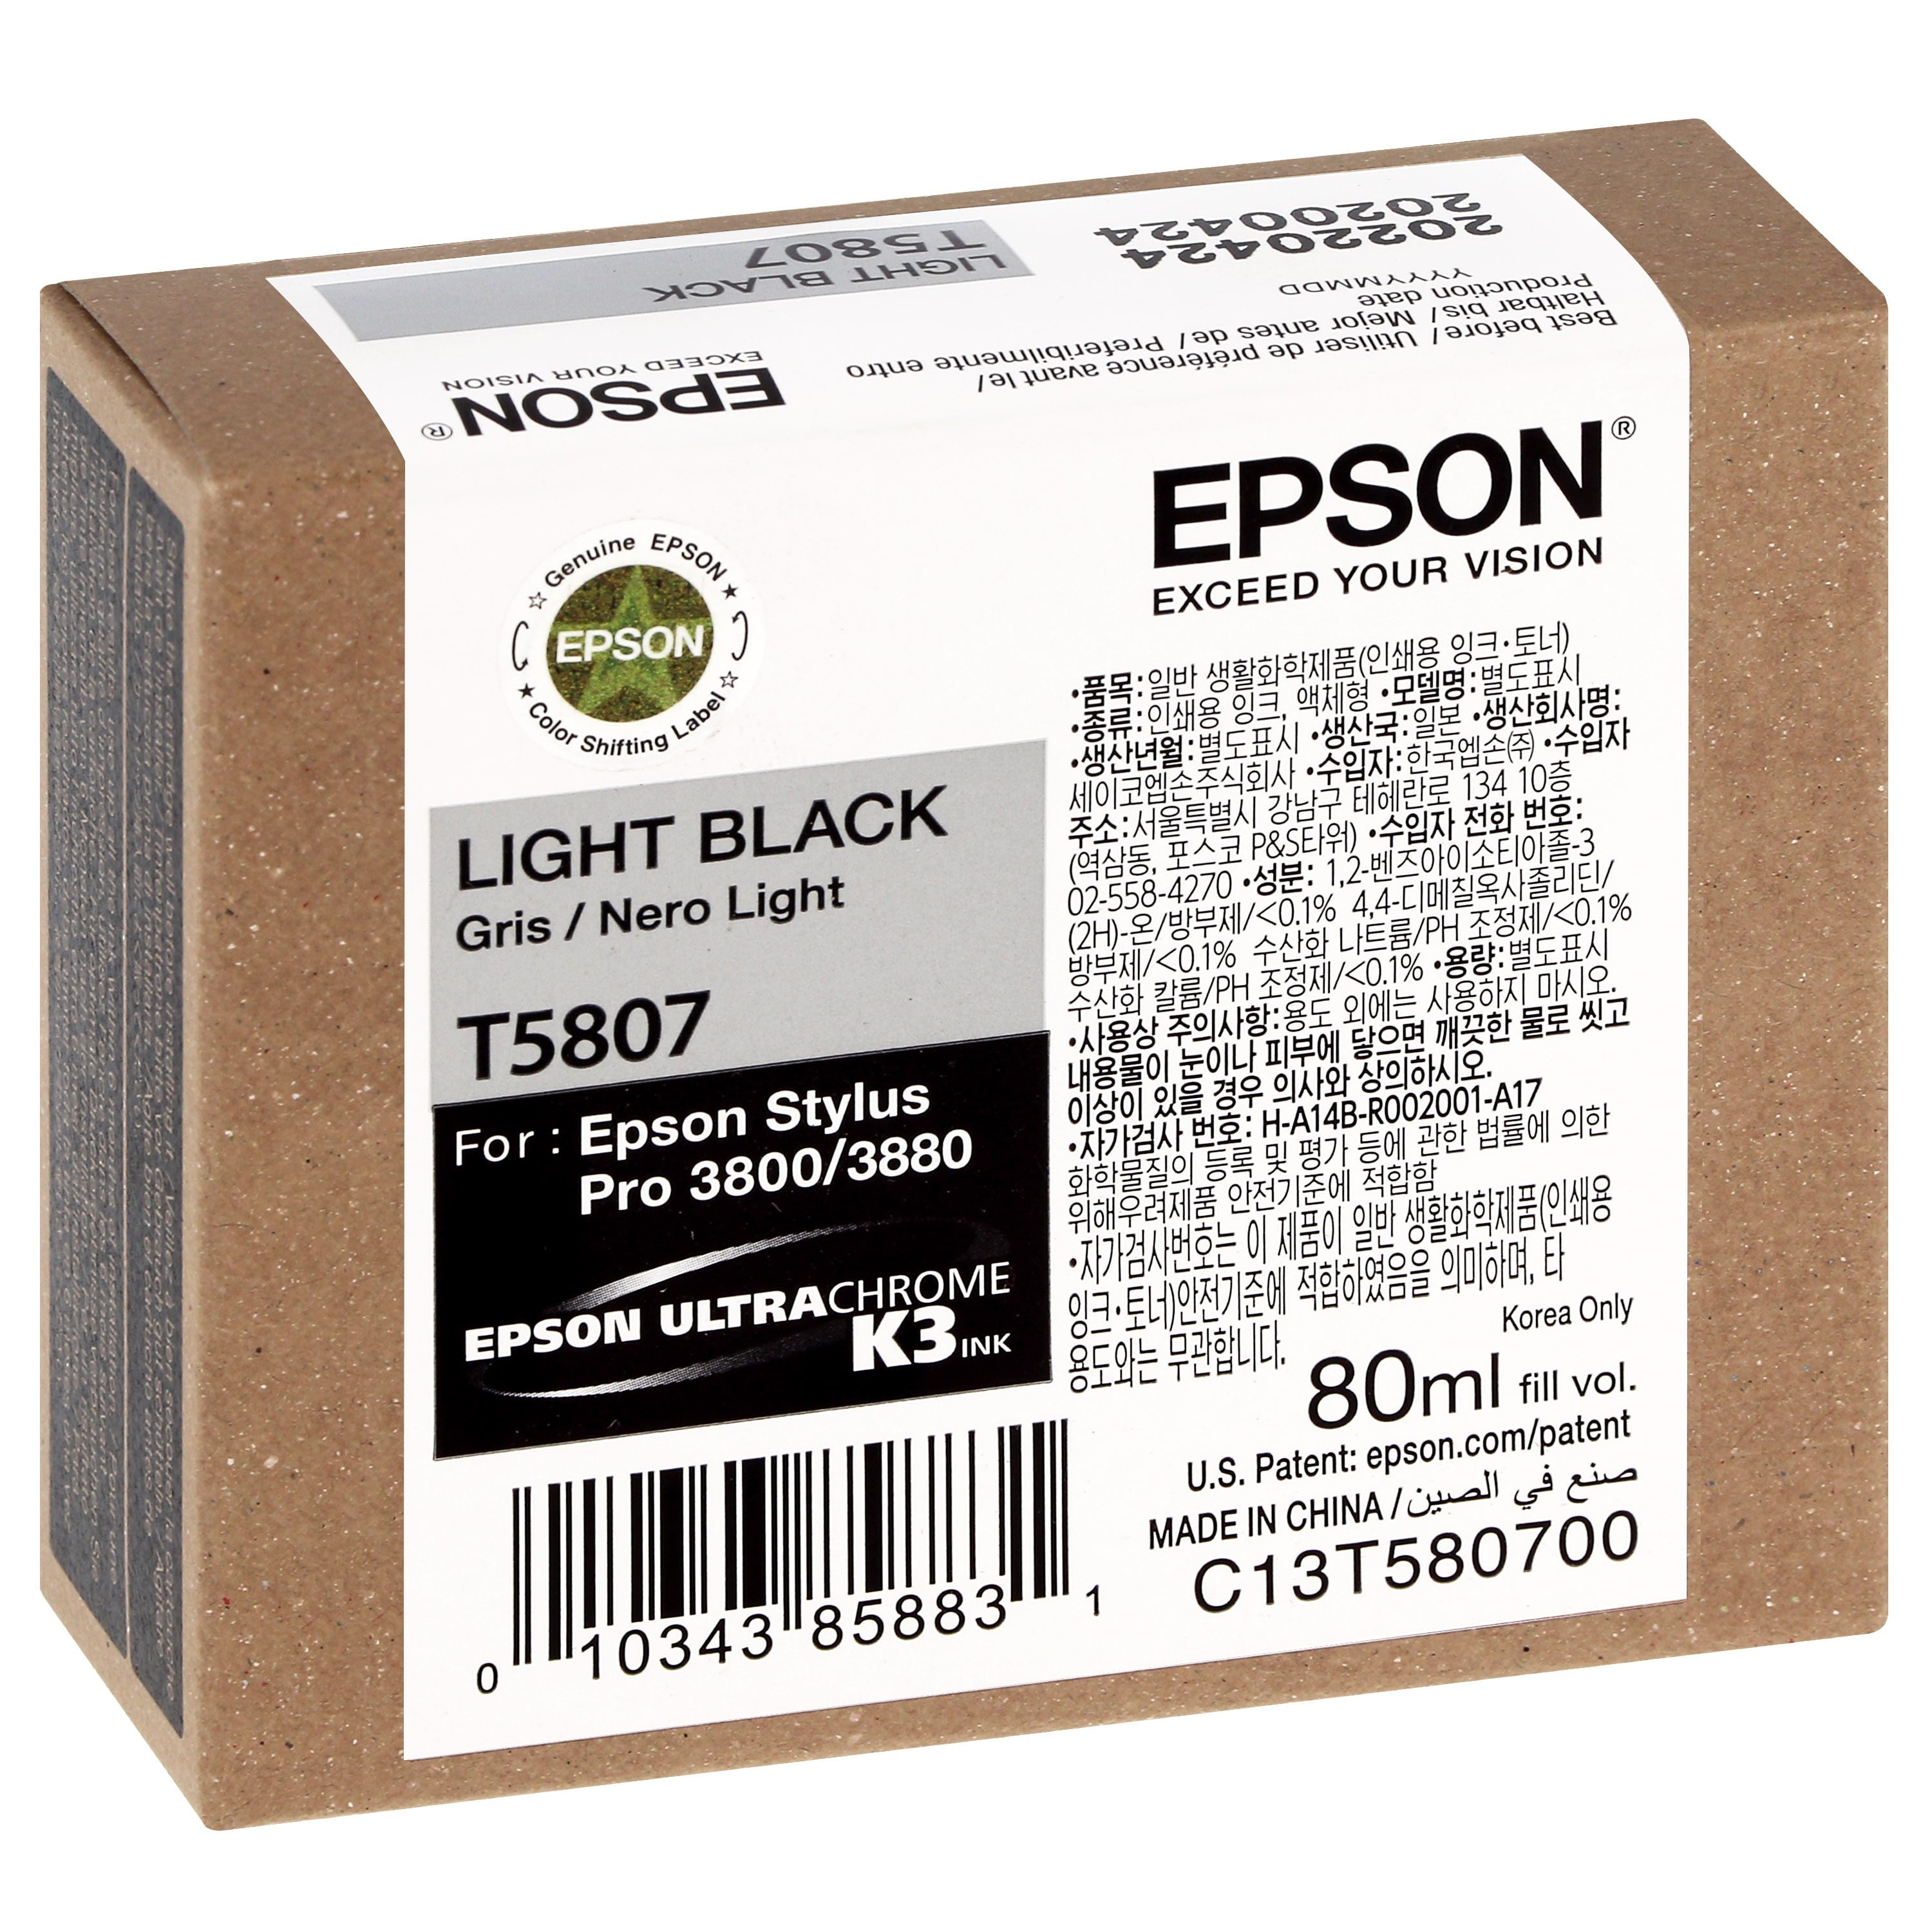 EPSON - Cartouche d'encre traceur T5807 Pour imprimante 3800/3880 Gris - 80ml